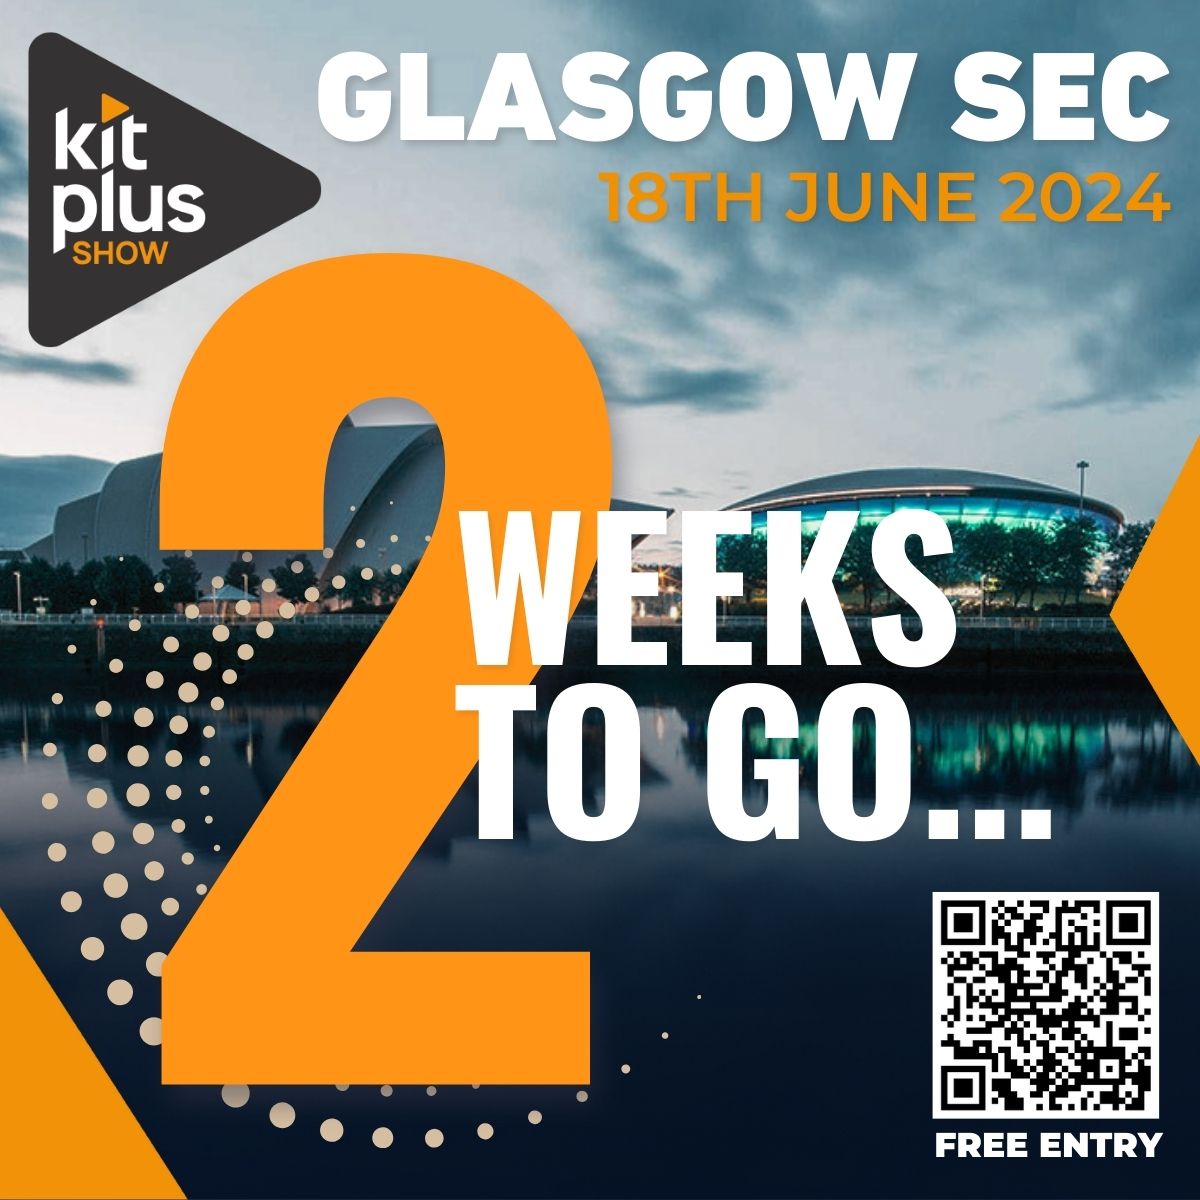 KitPlus Show Glasgow